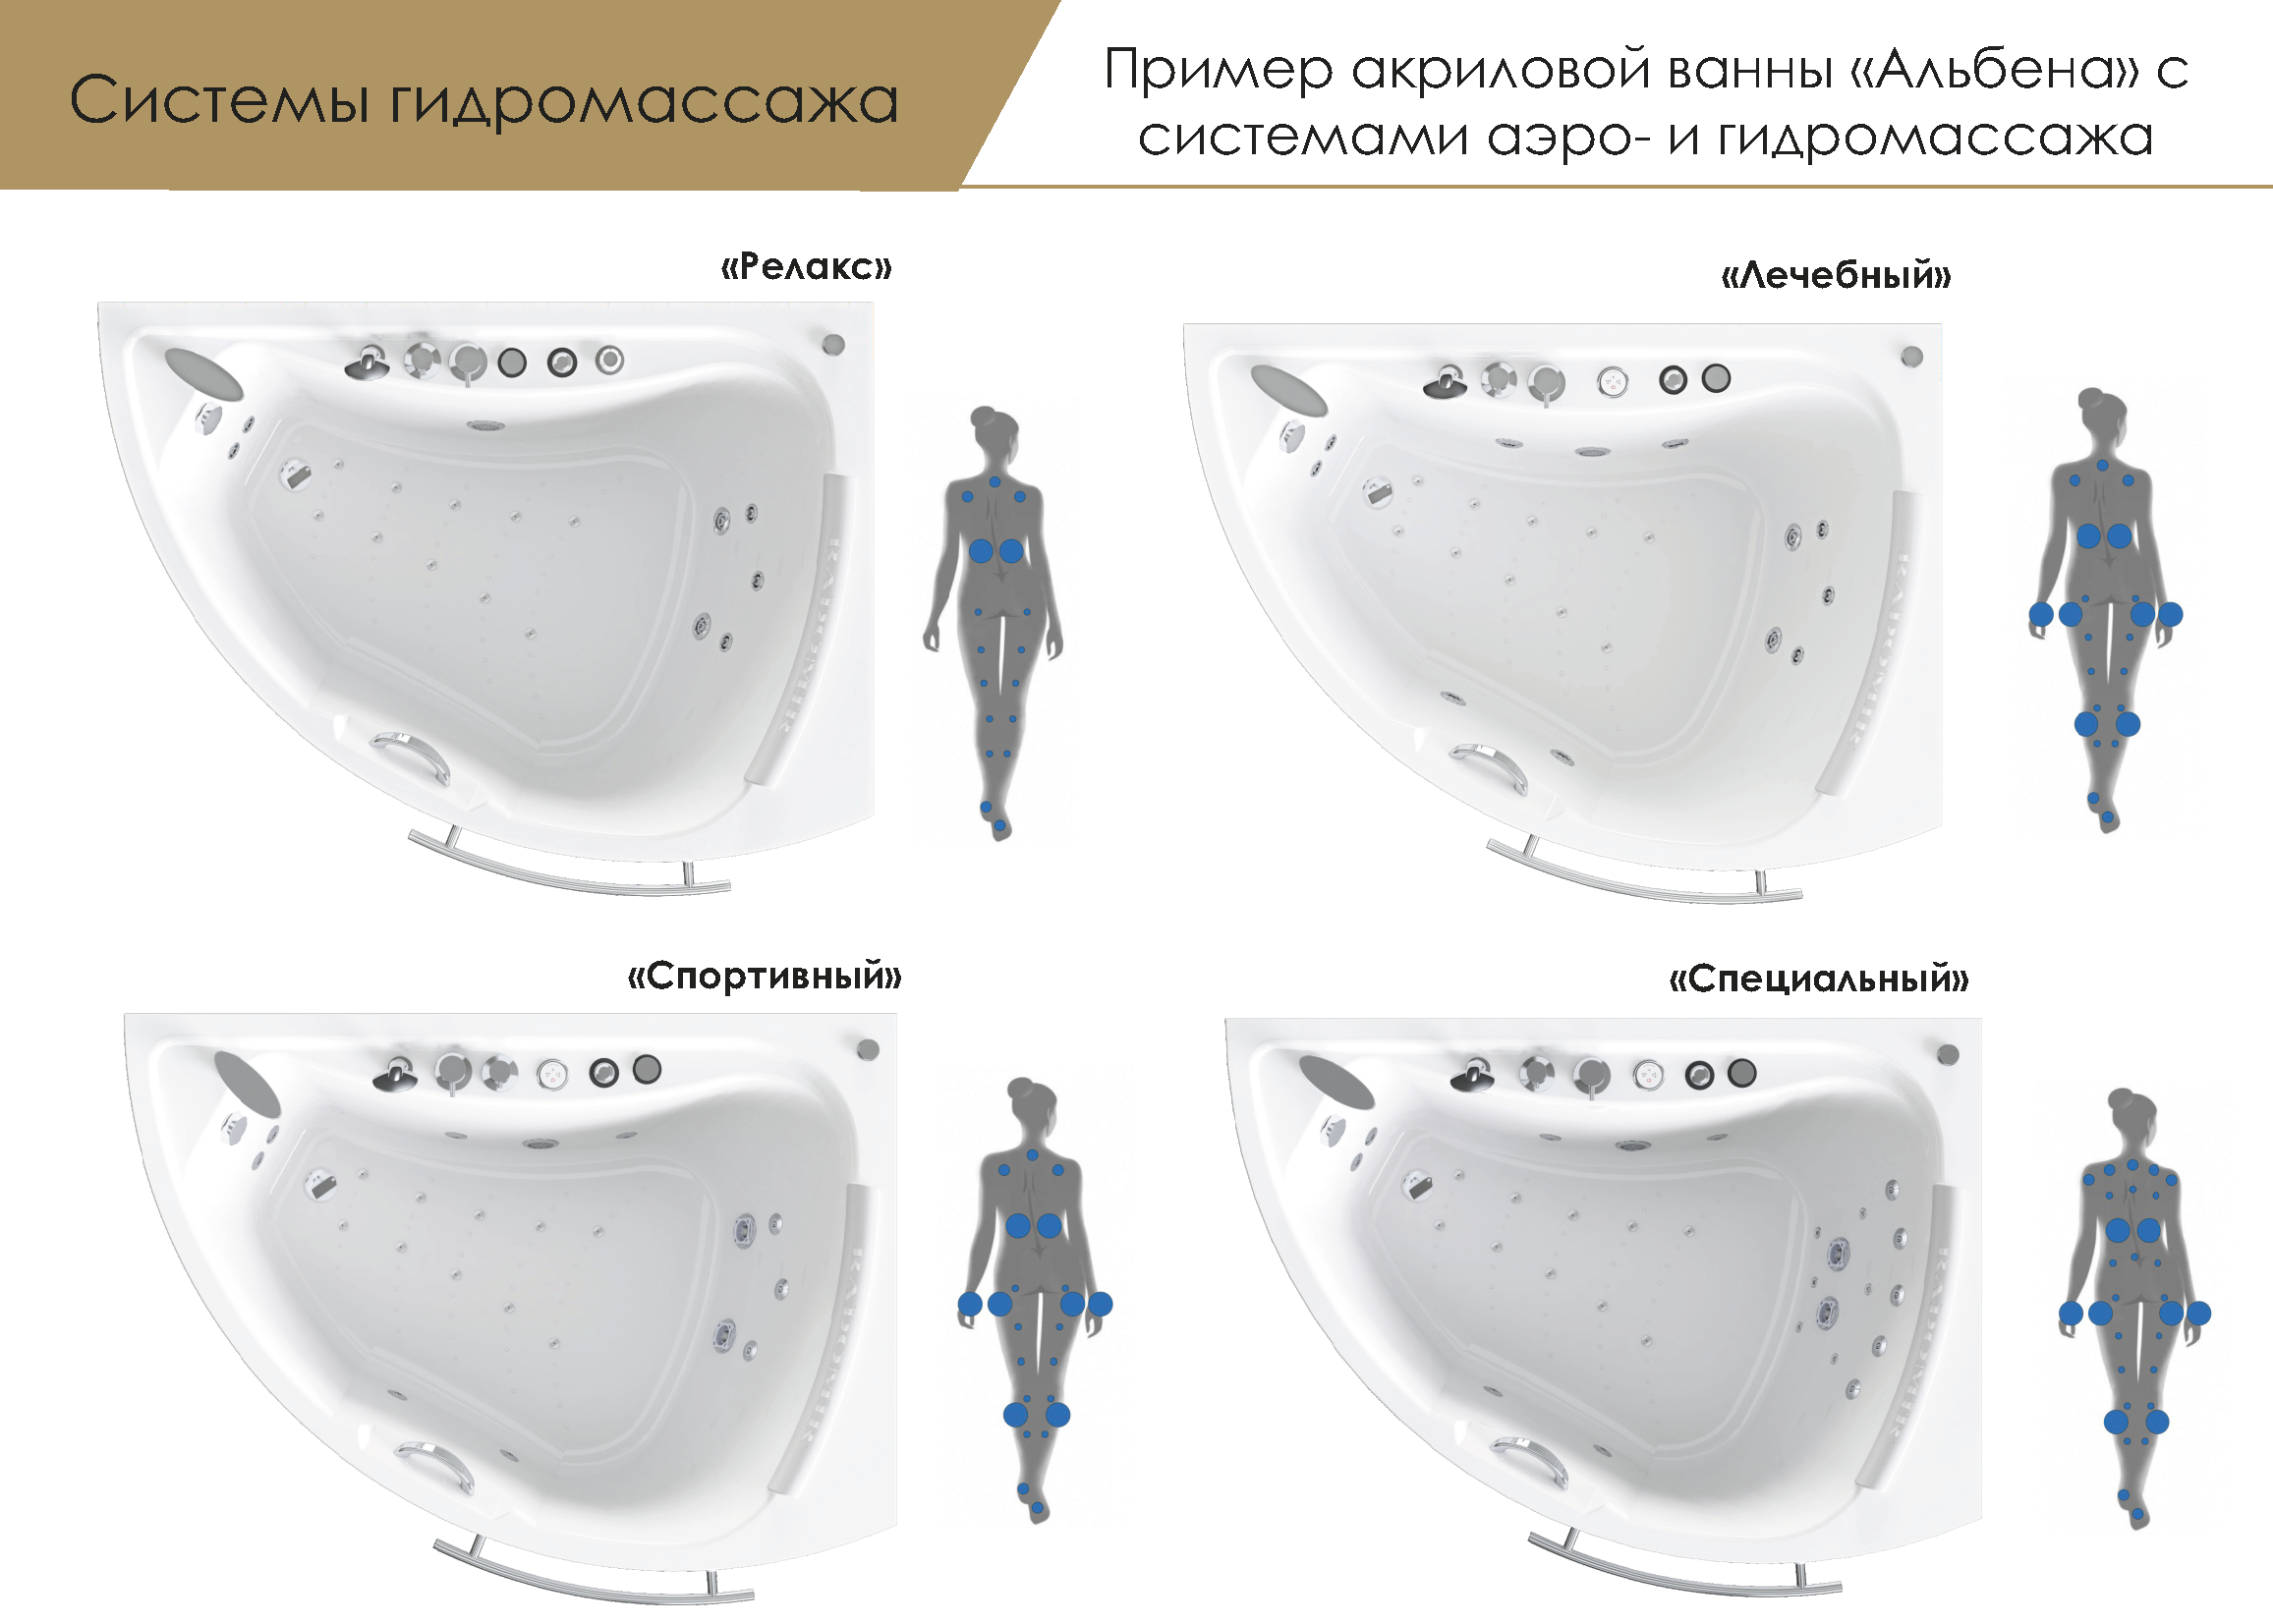 Гидромассажные ванны - обзор вариантов и стоимости